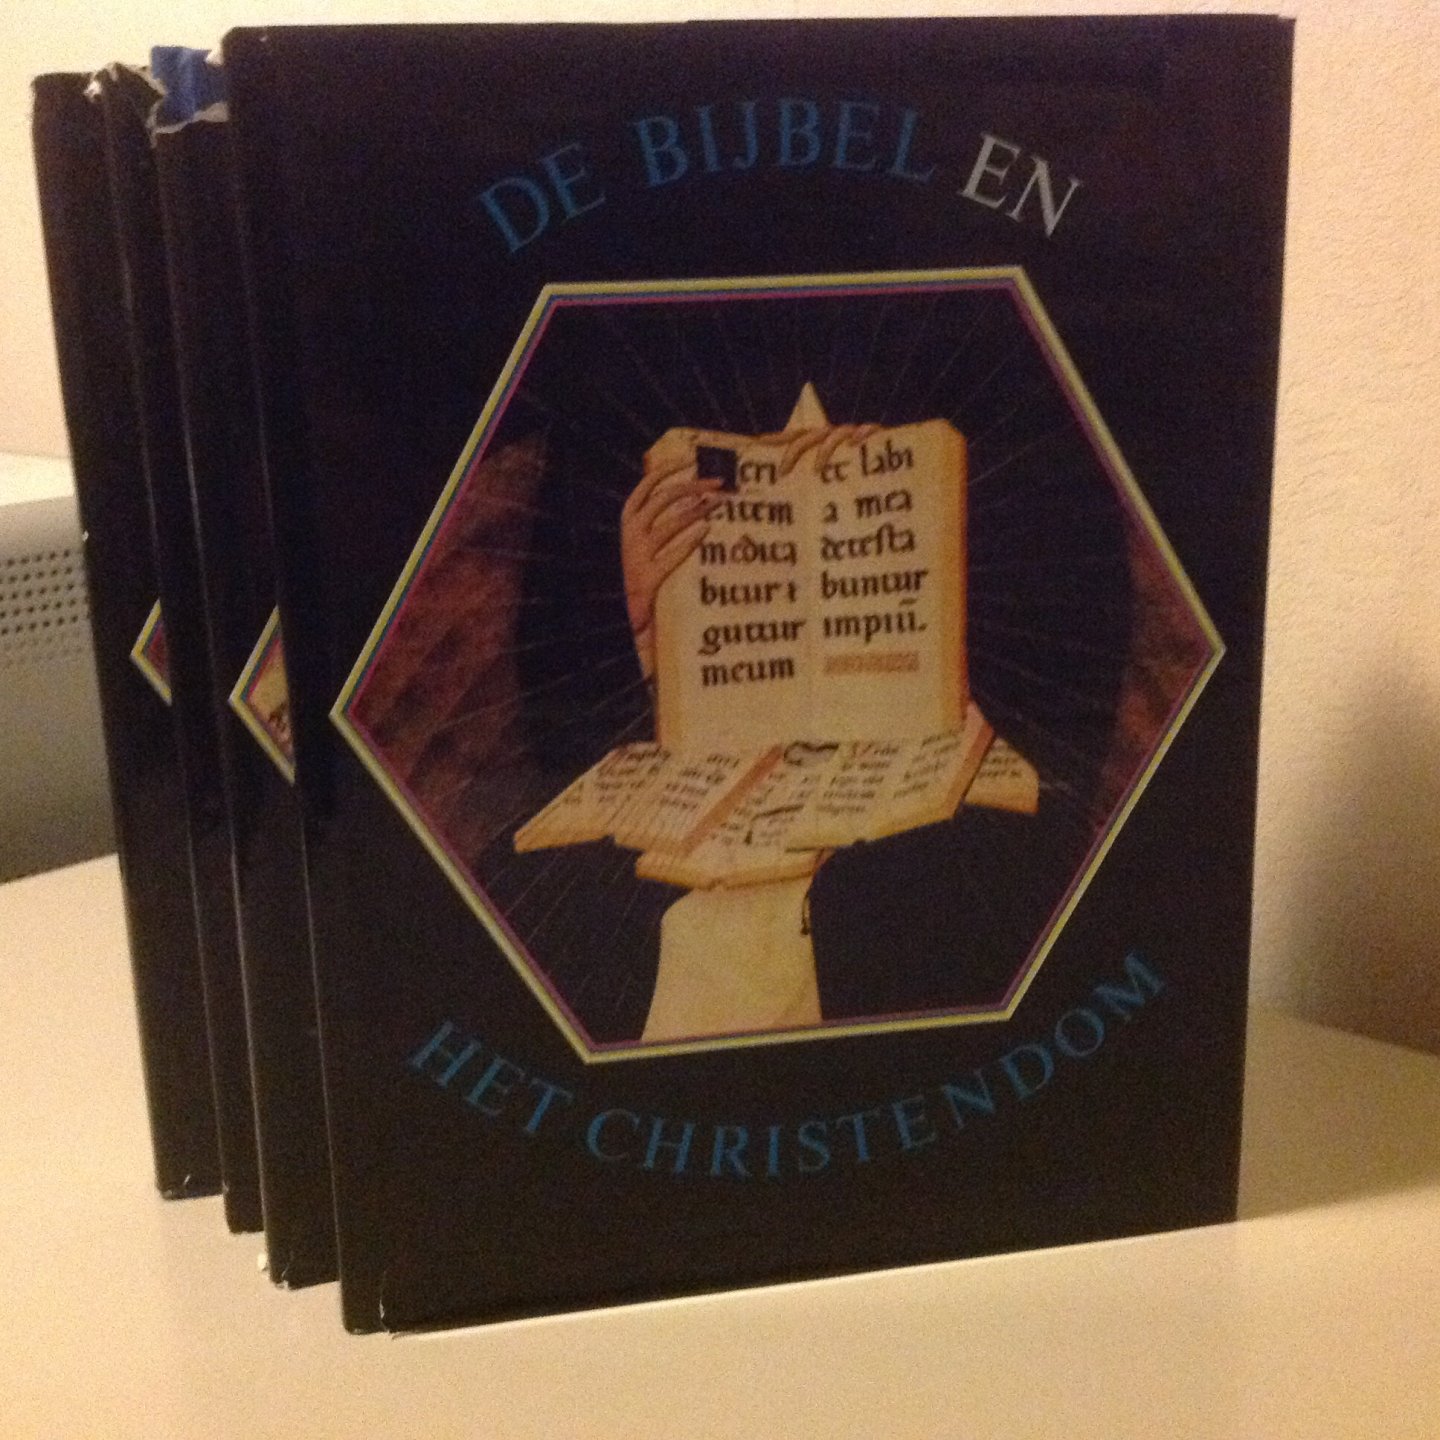 Stemberger, prof. dr. G. en anderen - Bybel en het christendom / 1 / druk 1